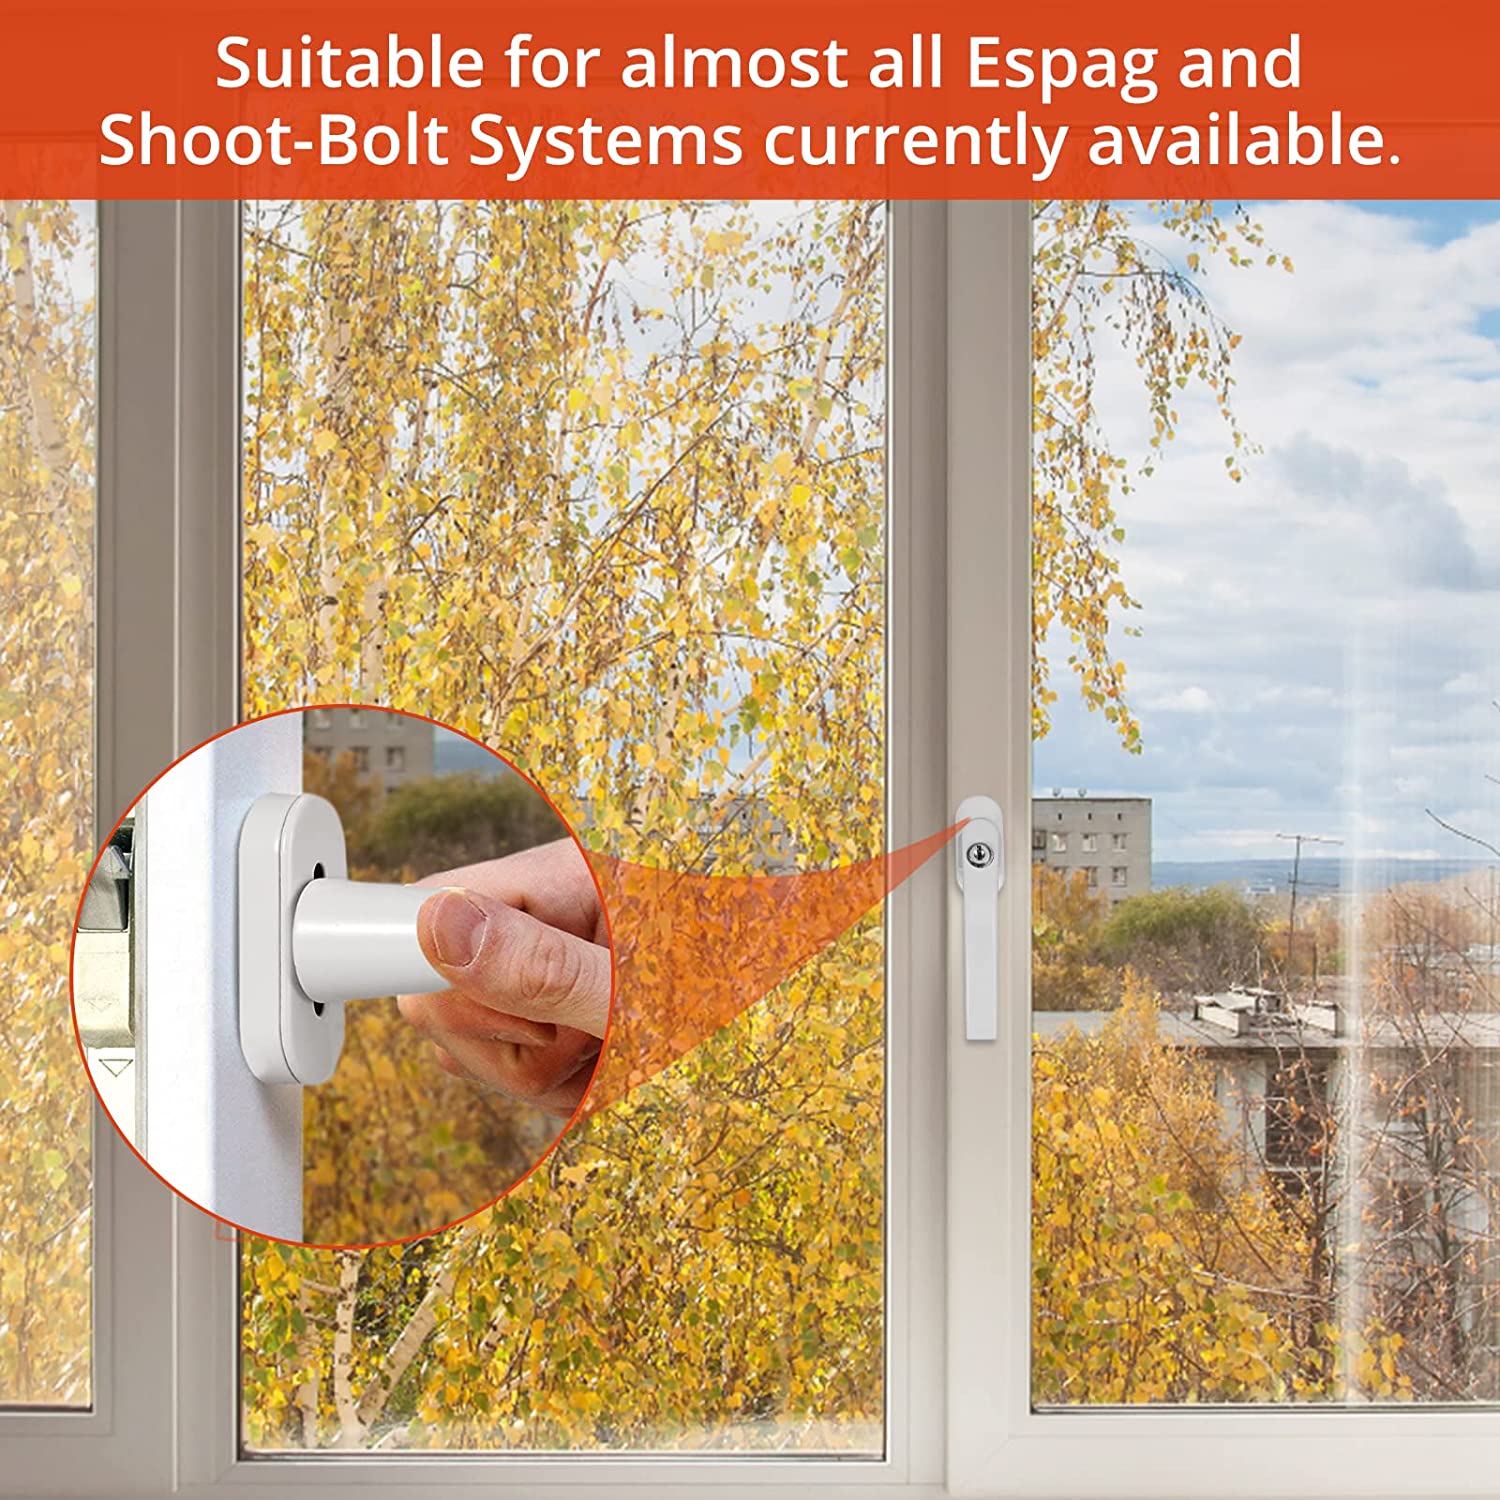 TD® Poignée de fenêtre verrouillable clés sécurité augmenté fermeture à verrou fenêtre garder maison compatibilité toutes fenêtres